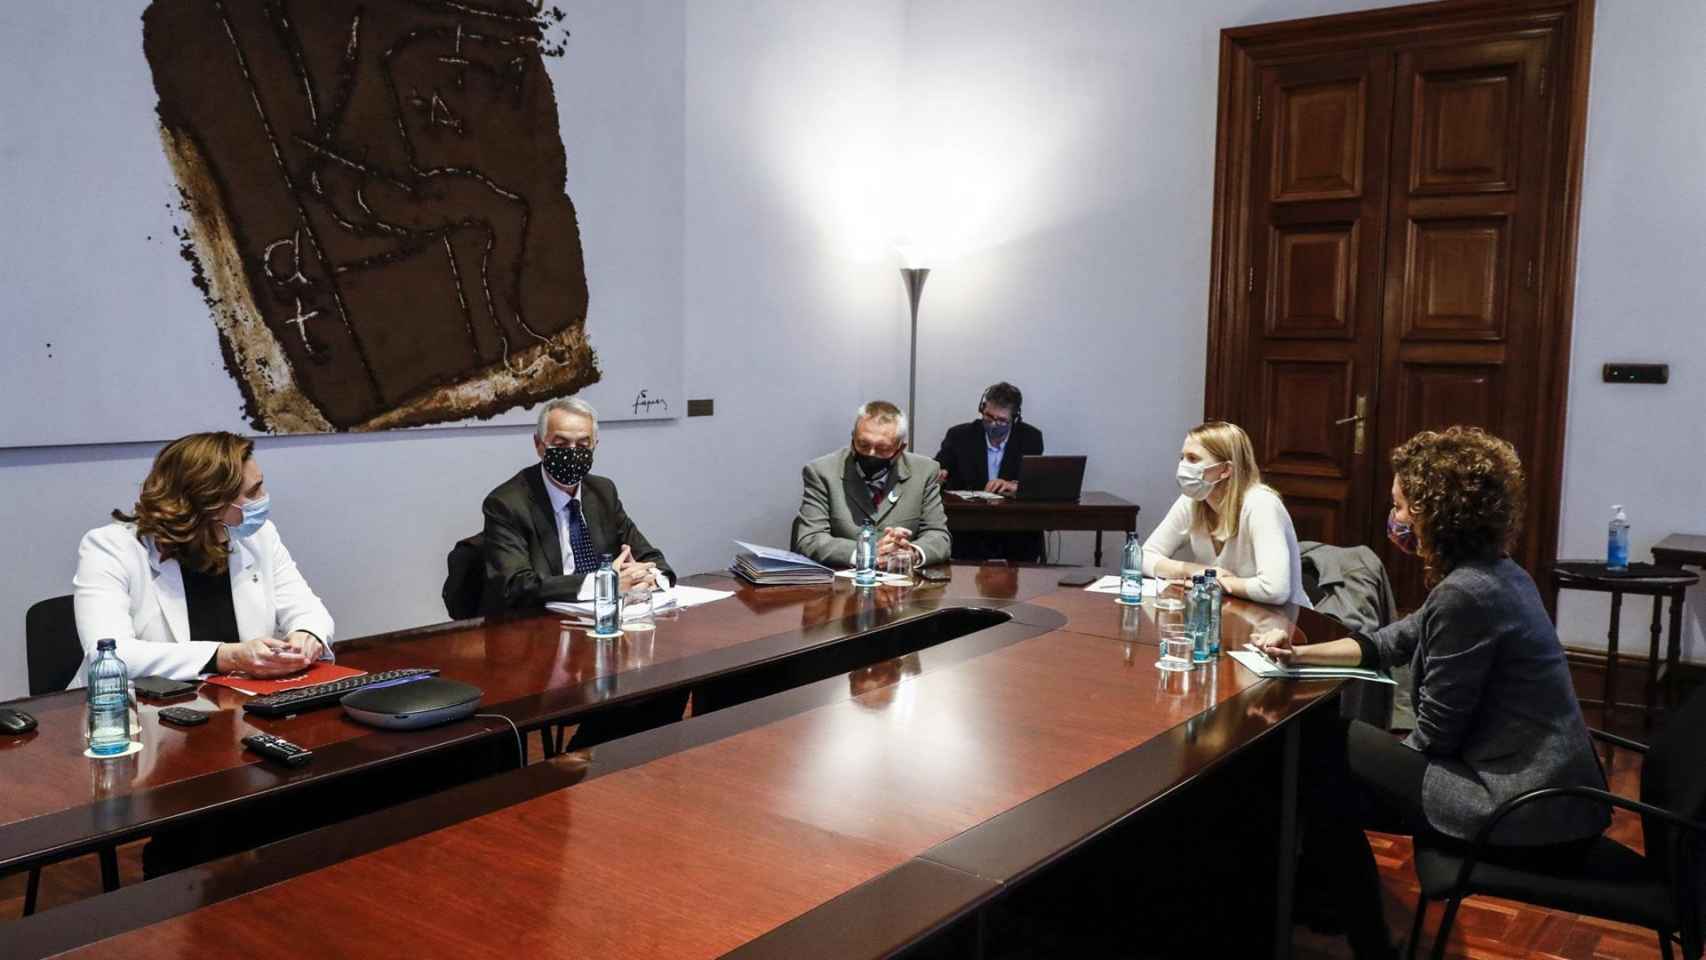 Colau preside una reunión institucional con las víctimas del atentado del 17A / AYUNTAMIENTO DE BARCELONA